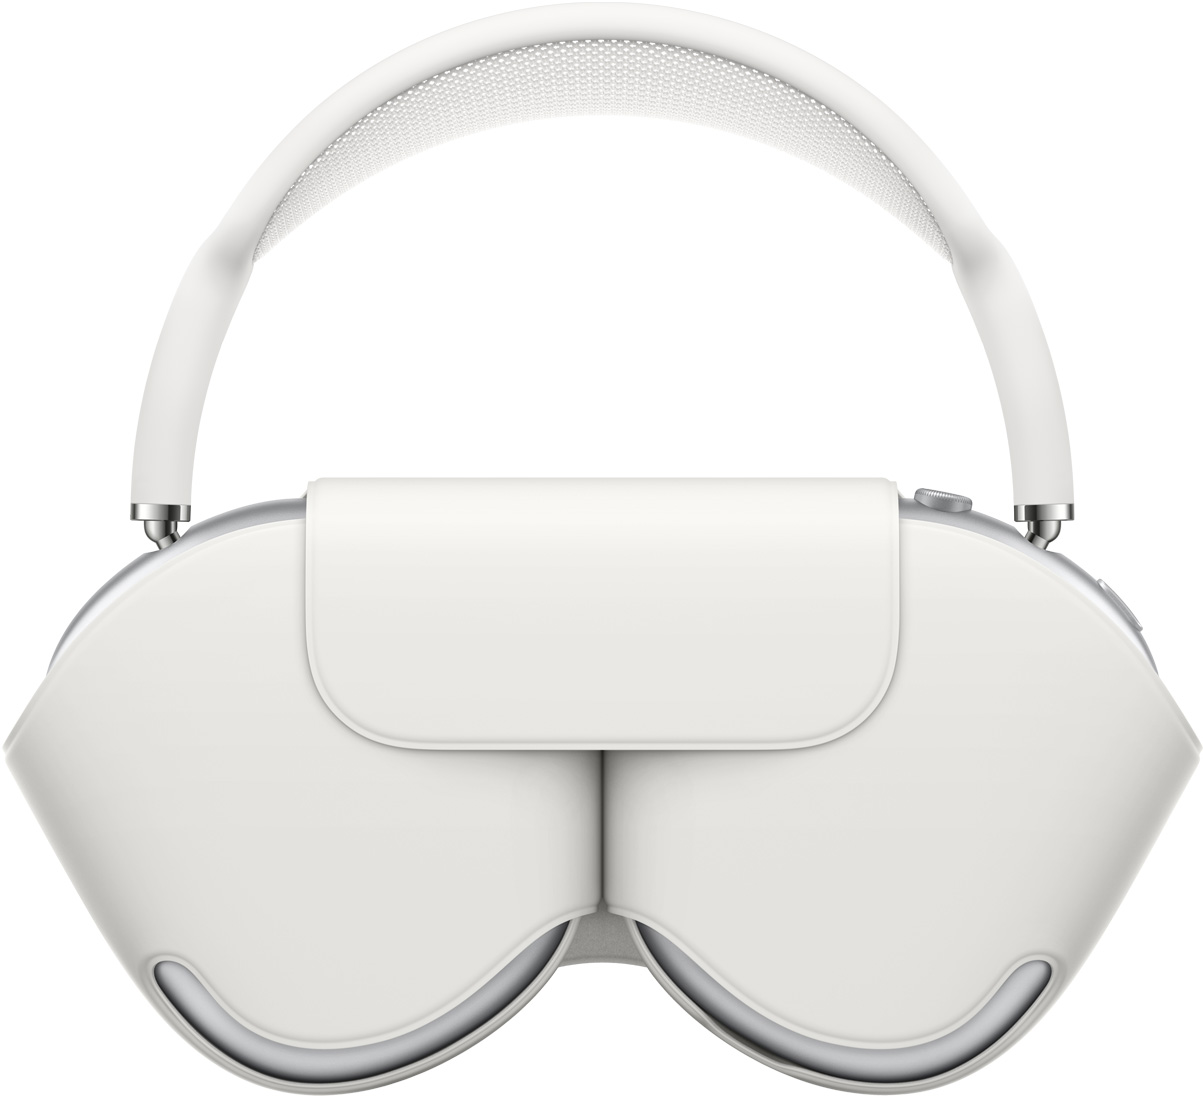 Sidabro spalvos „AirPods Max“ derančiame baltame išmaniajame dėkle, apsaugančiame ausų kaušelius, o lankelis būna virš dėklo, kai ausinės įdėtos.